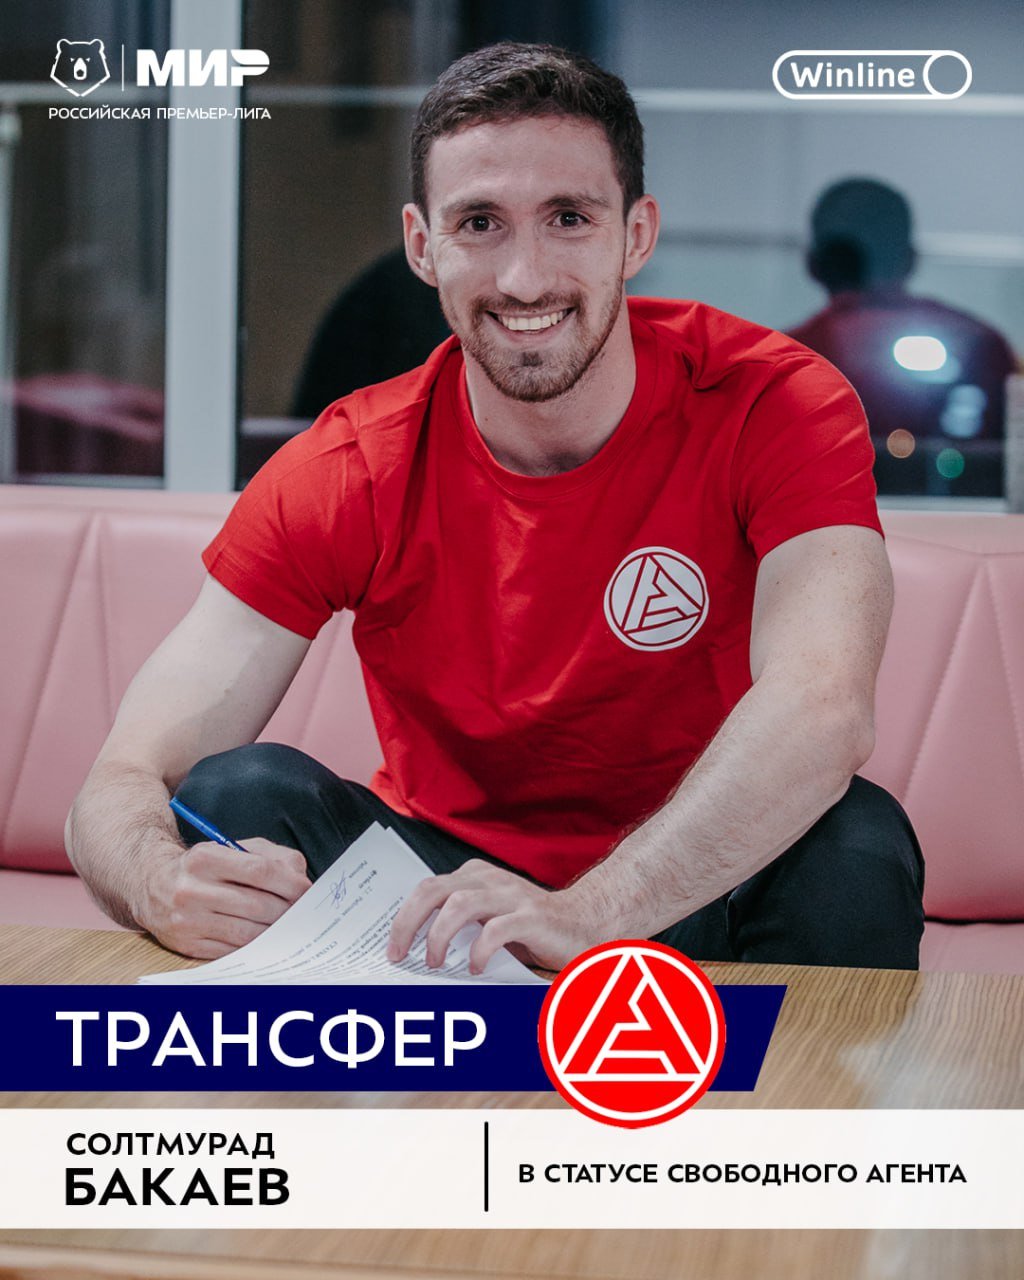 Солтмурад Бакаев продолжит карьеру в «Акроне»    Последние пять сезонов права на Солтмурада принадлежали «Рубину», за это время он успел покинуть РПЛ вместе с командой,подняться обратно и поиграть в аренде за «Родину»